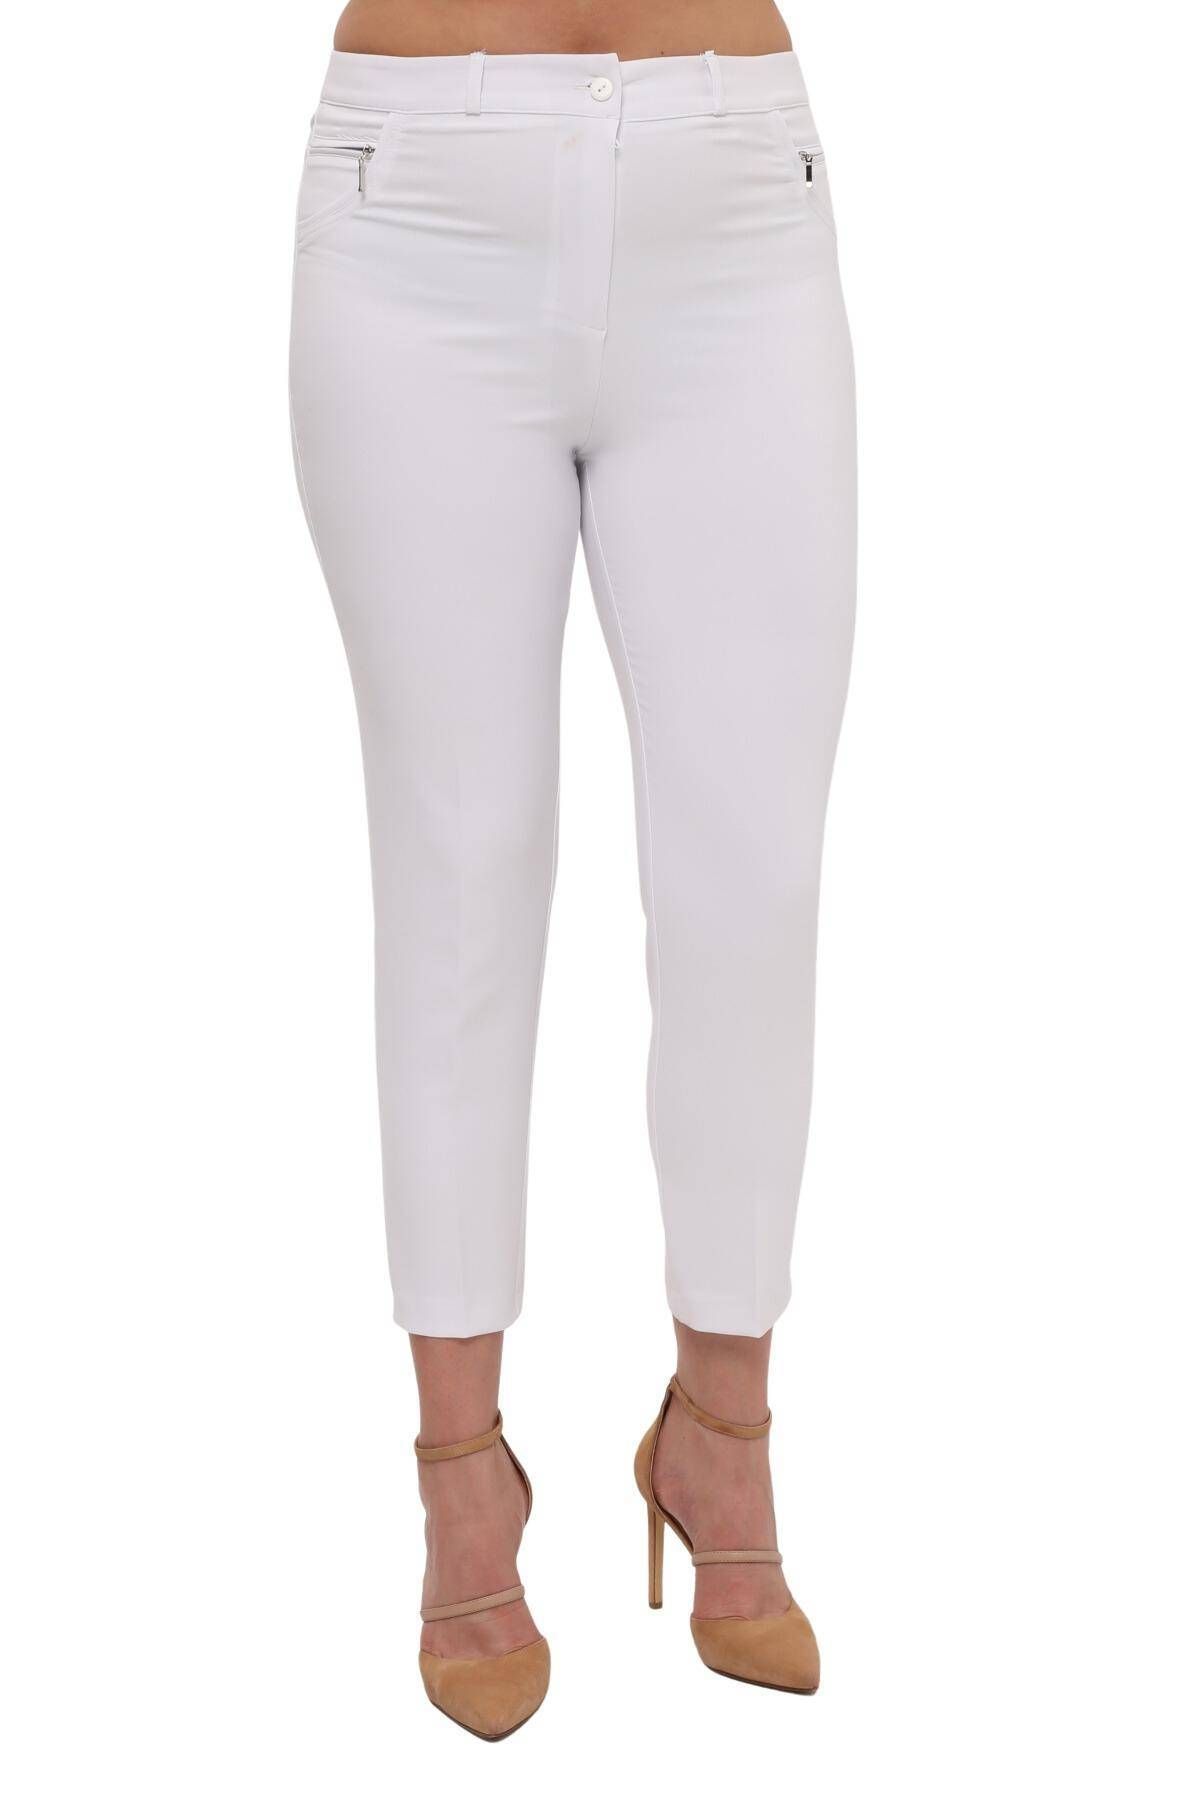 Hanezza Kadın Büyük Beden Beyaz Bilek Boy Yüksek Bel 42-56 Likralı Slim Fit Pantolon